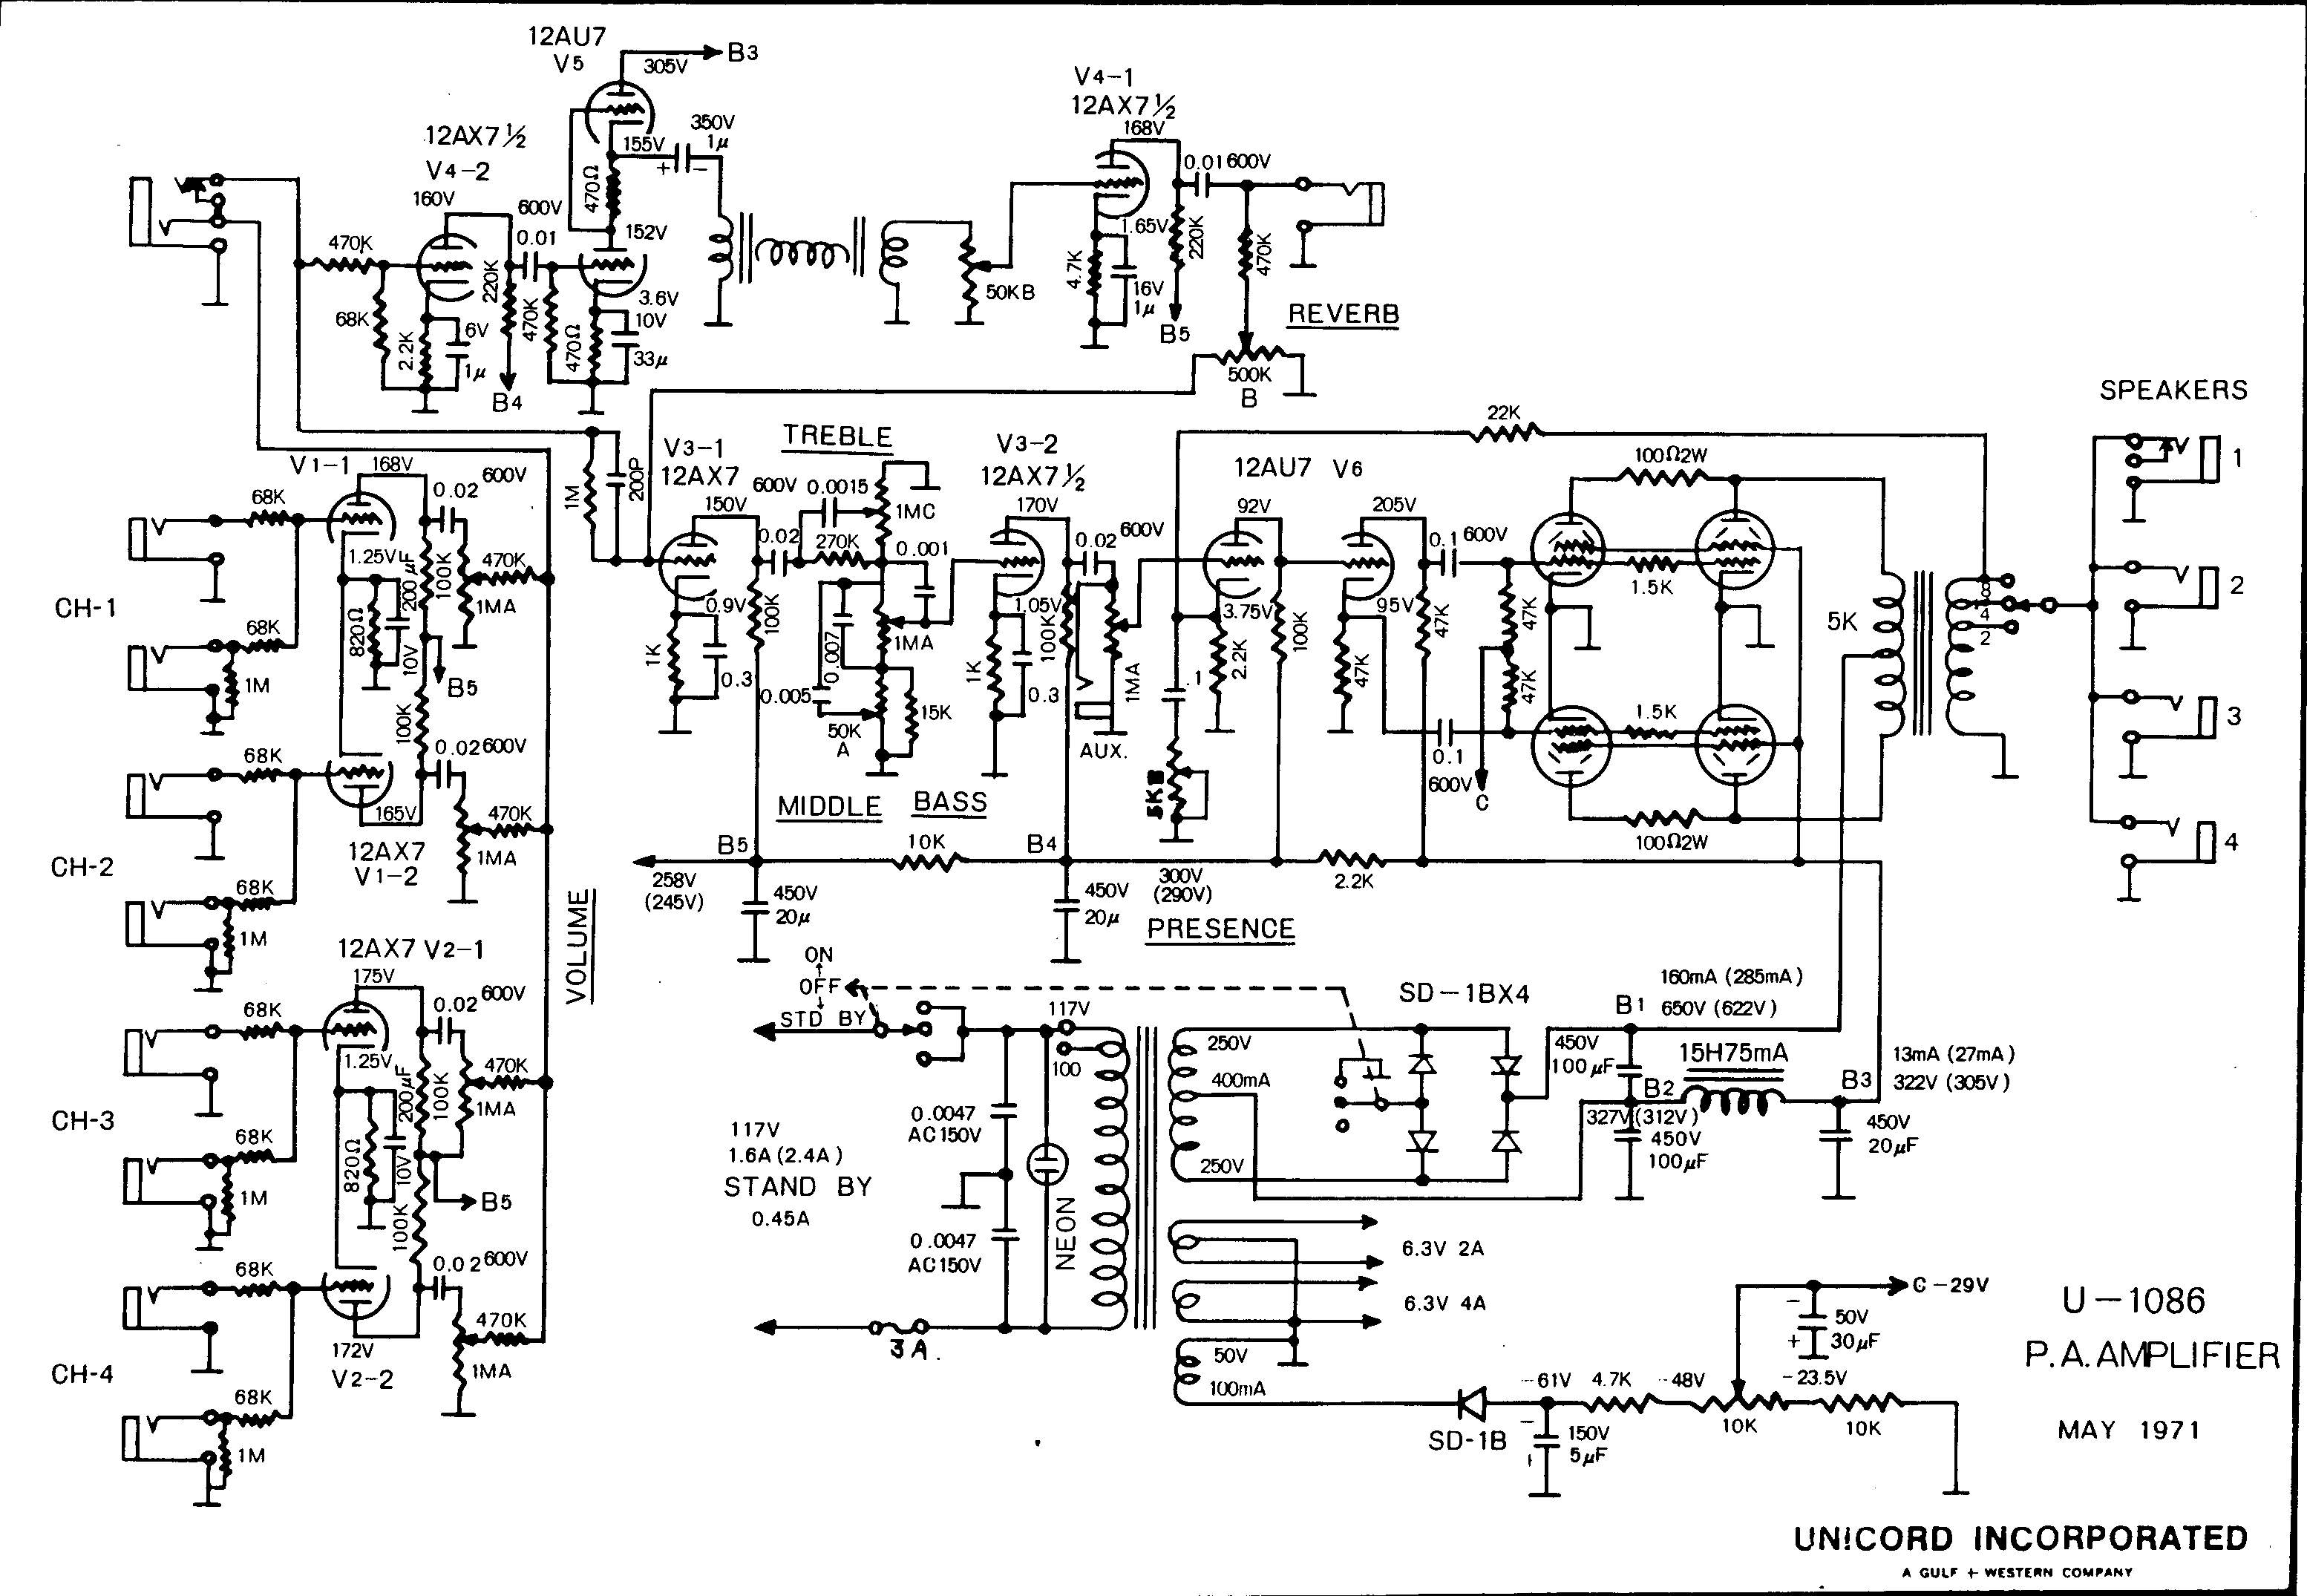 Схема Unicord - U1086 Power Amplifier (1971)